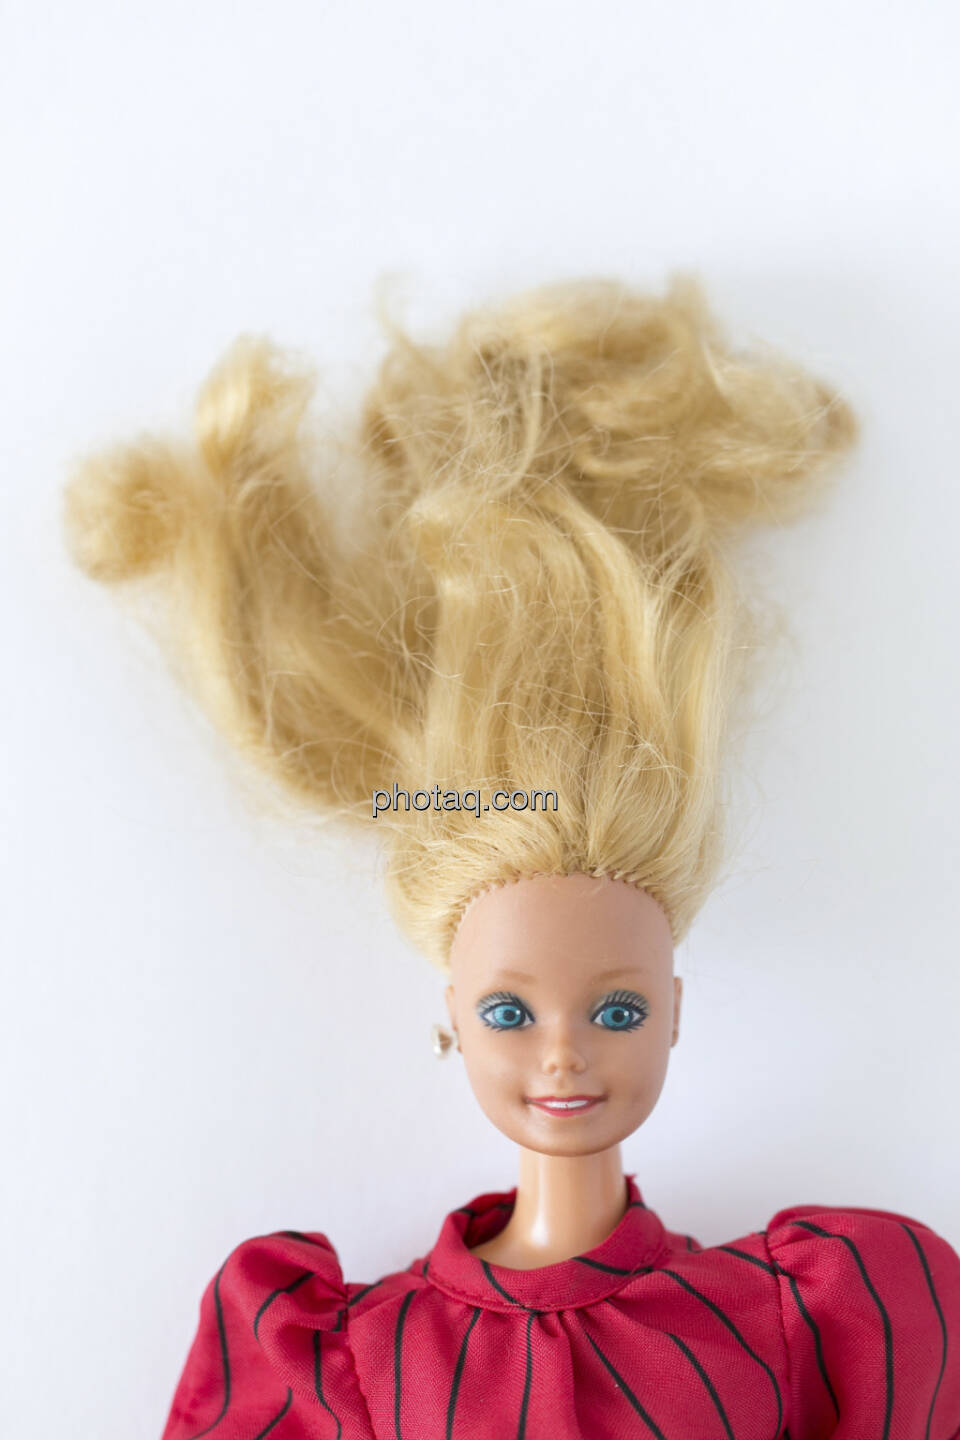 Haare zu Berge stehen, Barbie Puppe